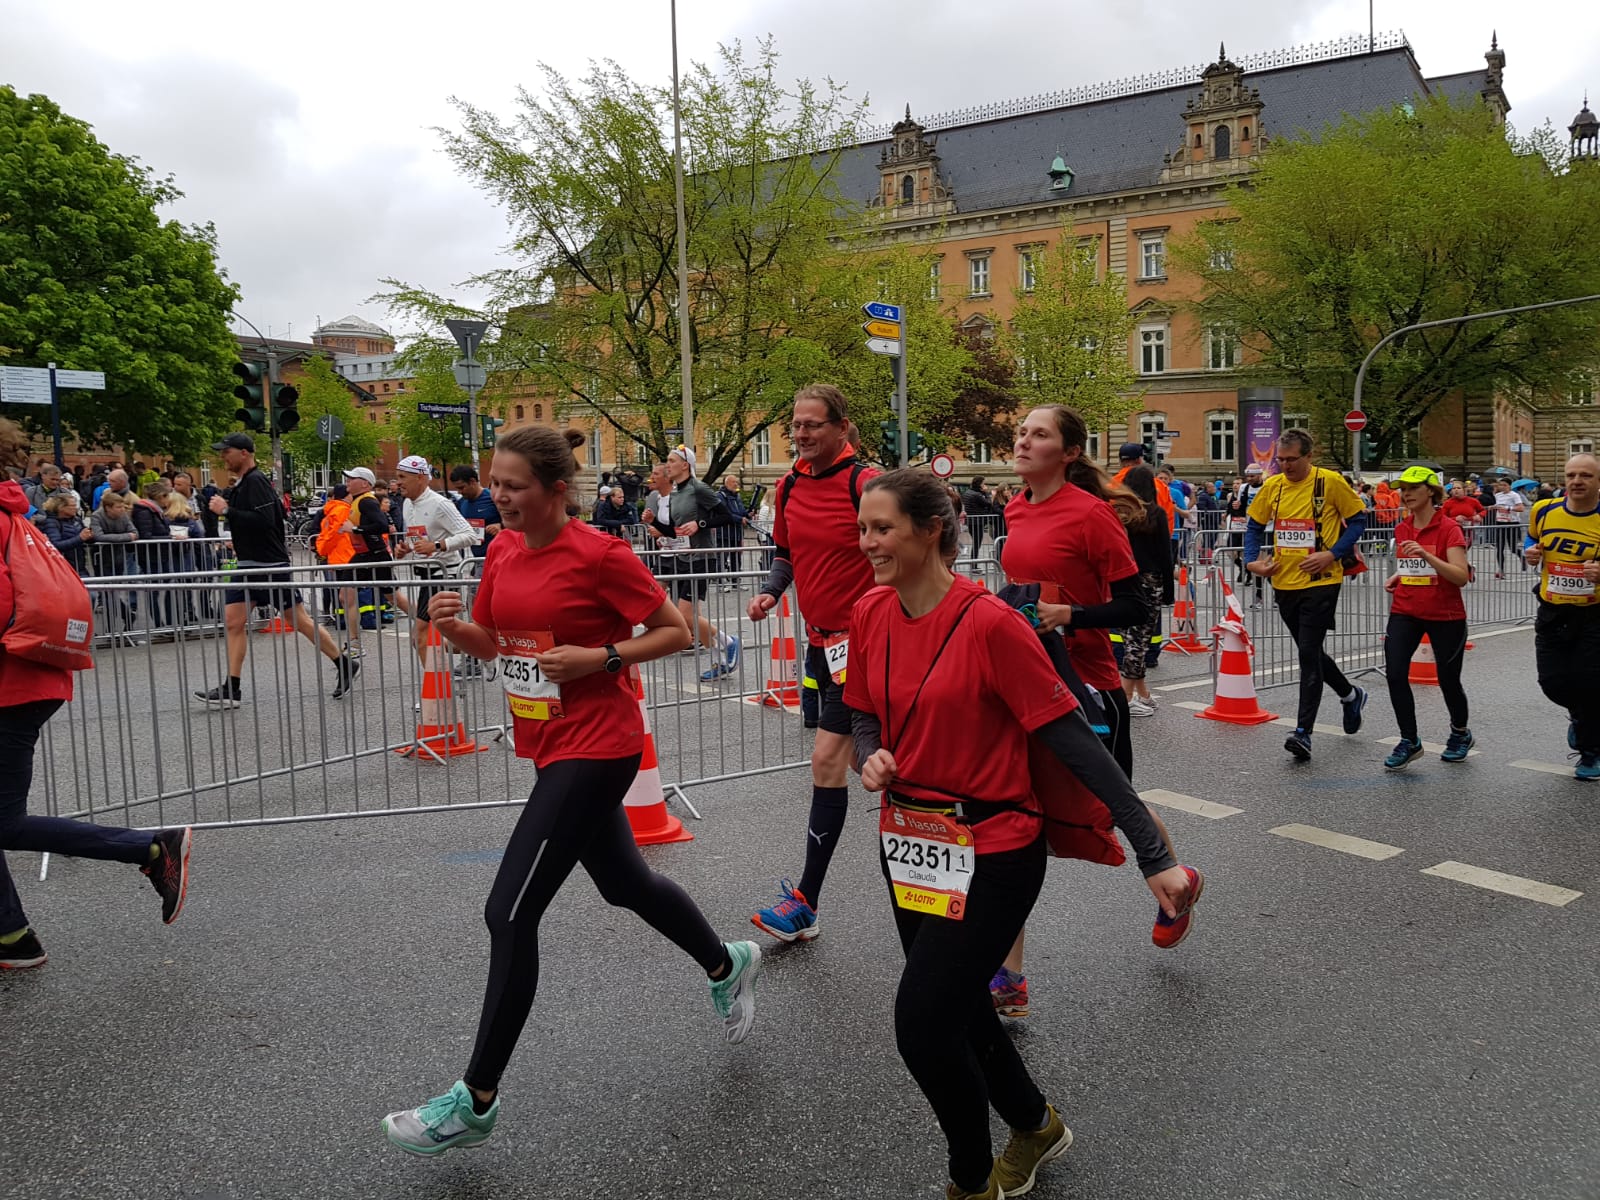 Bereits zum 10. Mal war ein Staffel-Team der Kreisverwaltung Stormarn beim Hamburg-Marathon am Start: Nur noch wenige Meter bis zur Ziellinie: Schlussläuferin Stefanie Rieck (links) mit Bastian Kruse, Claudia Kluge und Rebecca Meins (von links) beim gemeinsamen Zieleinlauf.